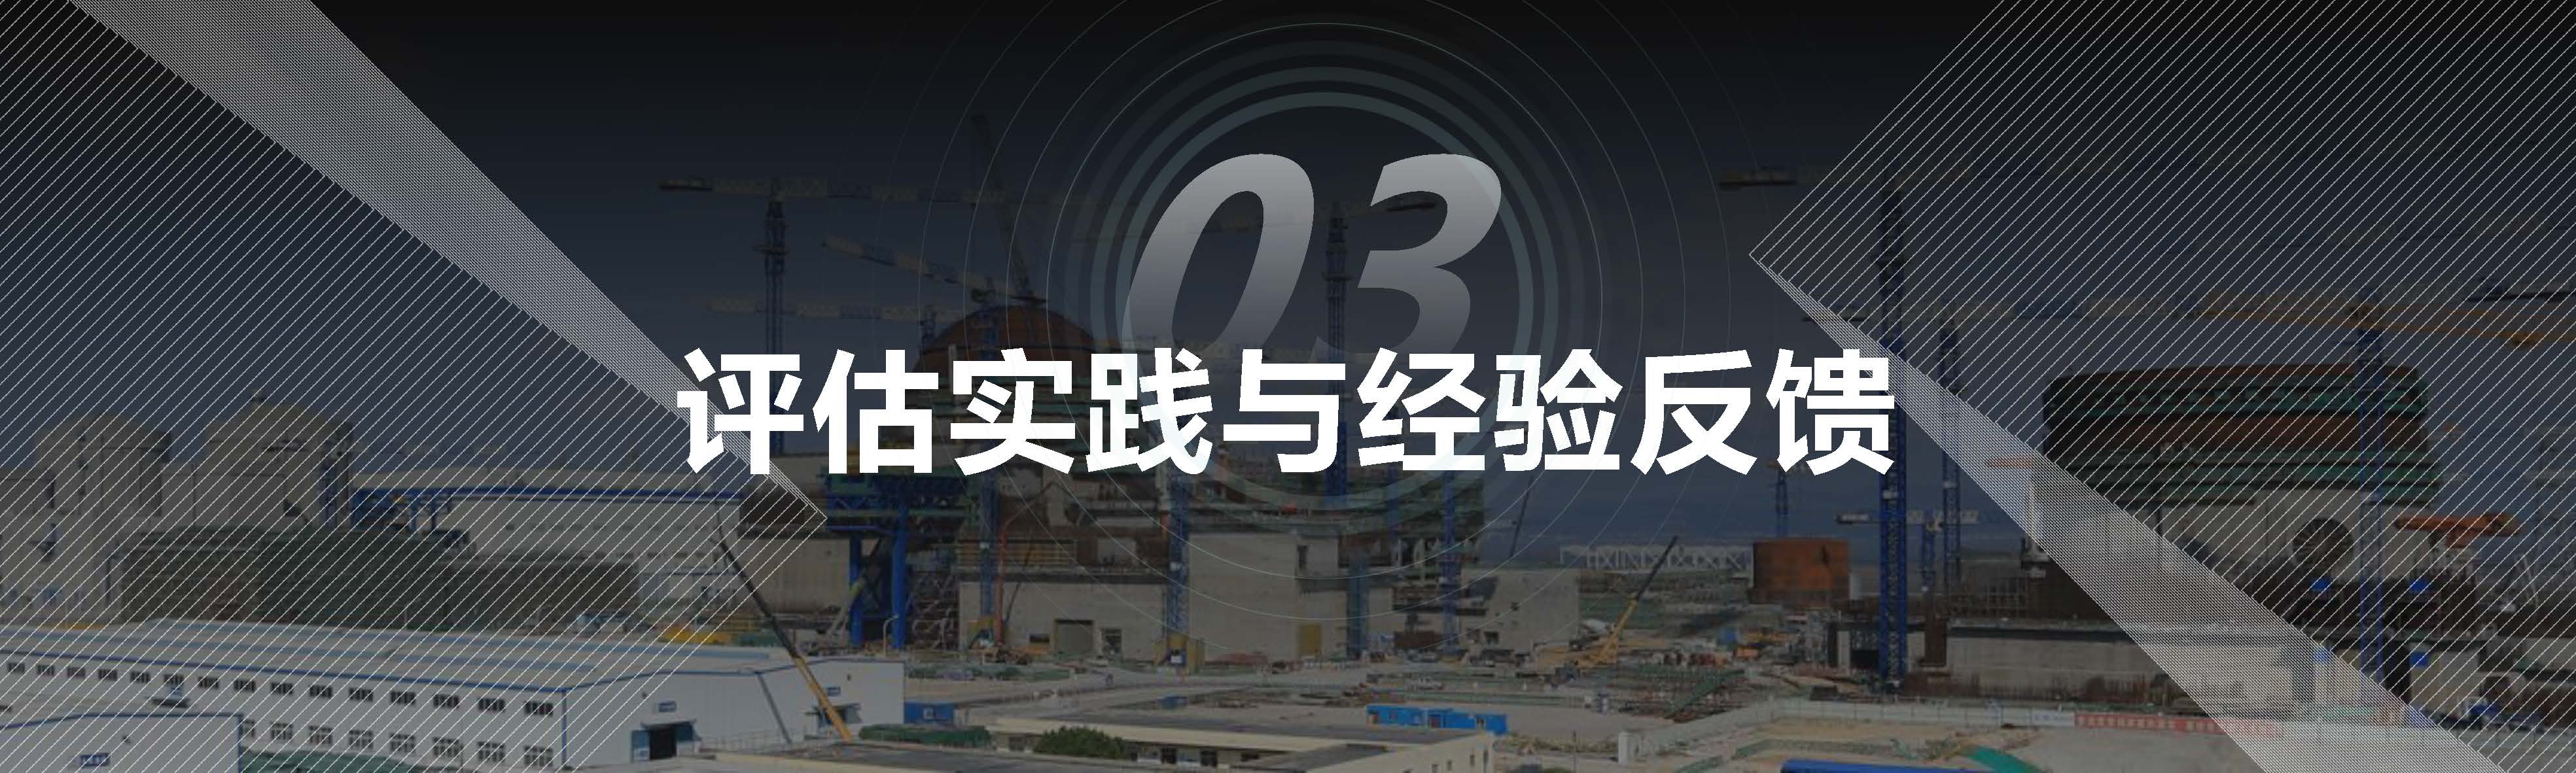 03 赵成昆 20201106核电建设同行评估与经验交流1.0 (1)_页面_17.jpg